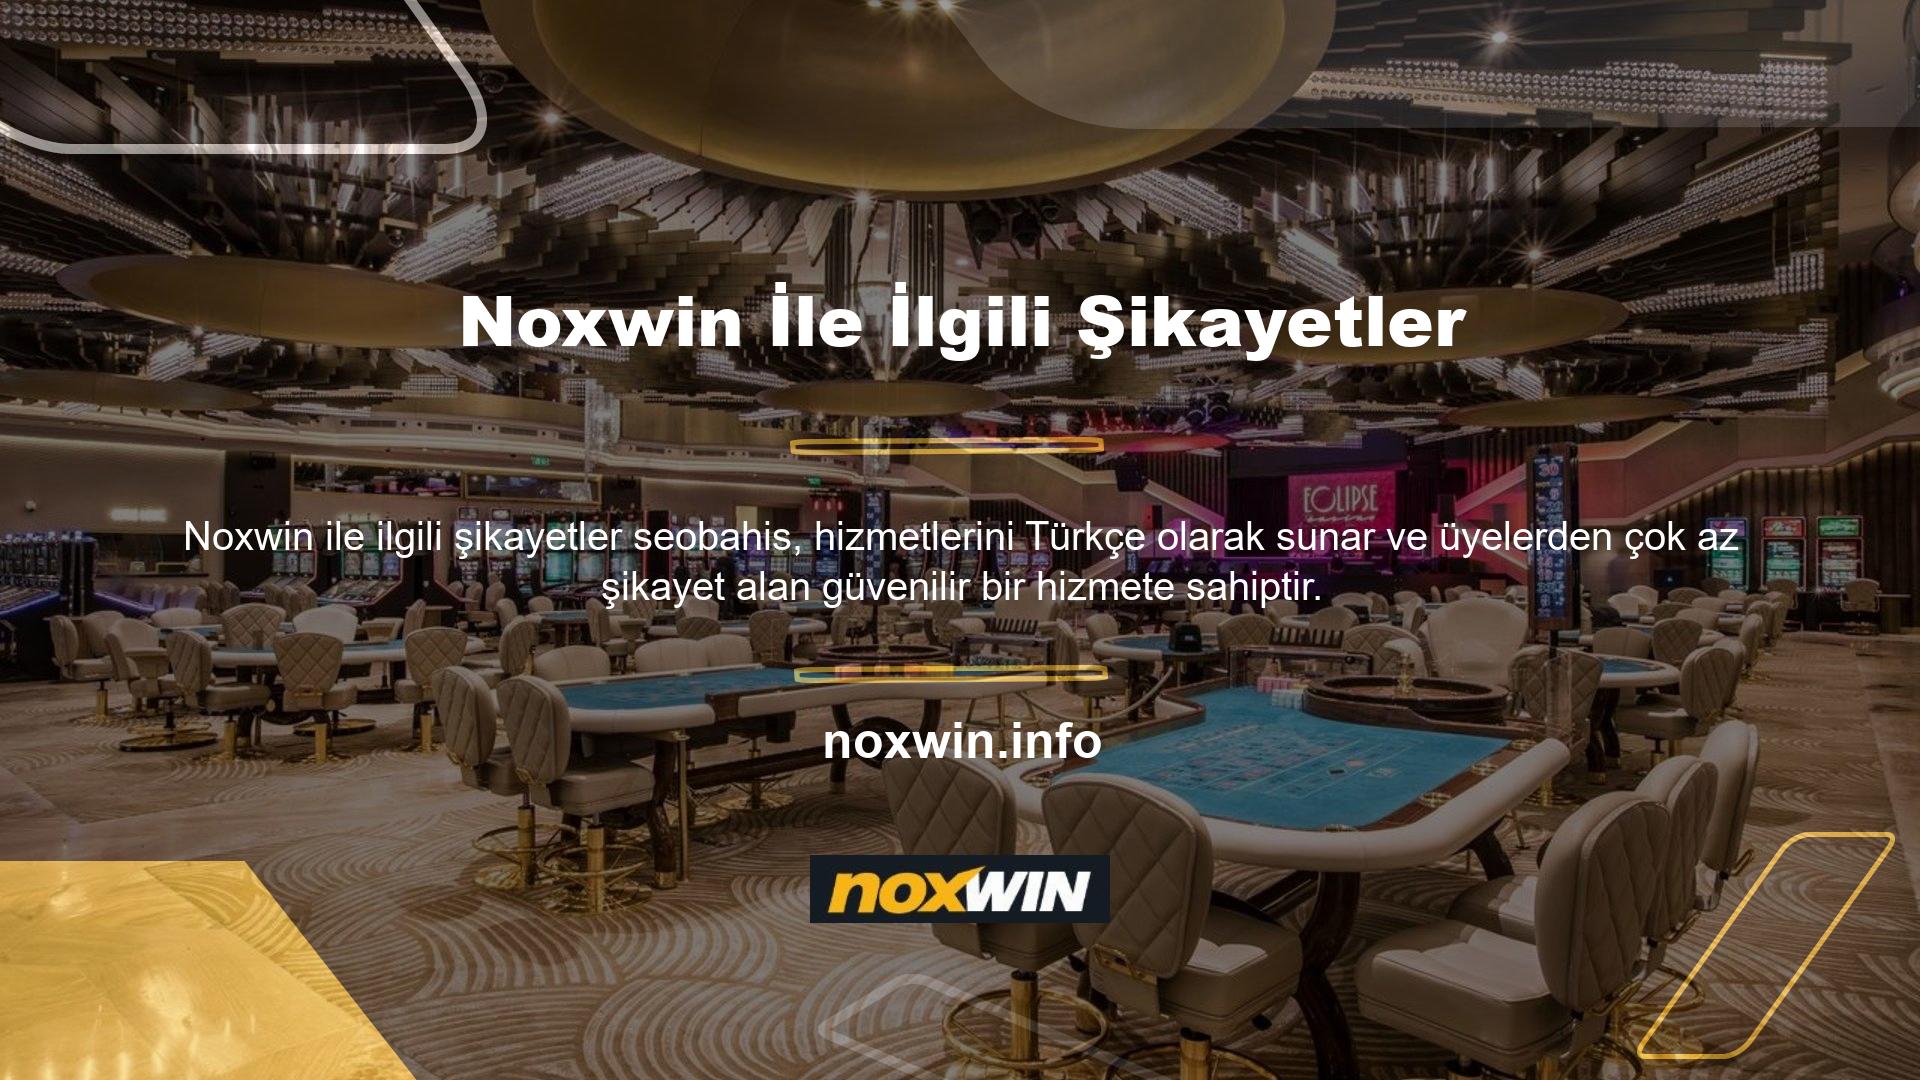 Noxwin müşteri temsilcileri, işlemlerle ilgili çeşitli şikayetleri derhal değerlendirmeyi ve çözmeyi taahhüt eder